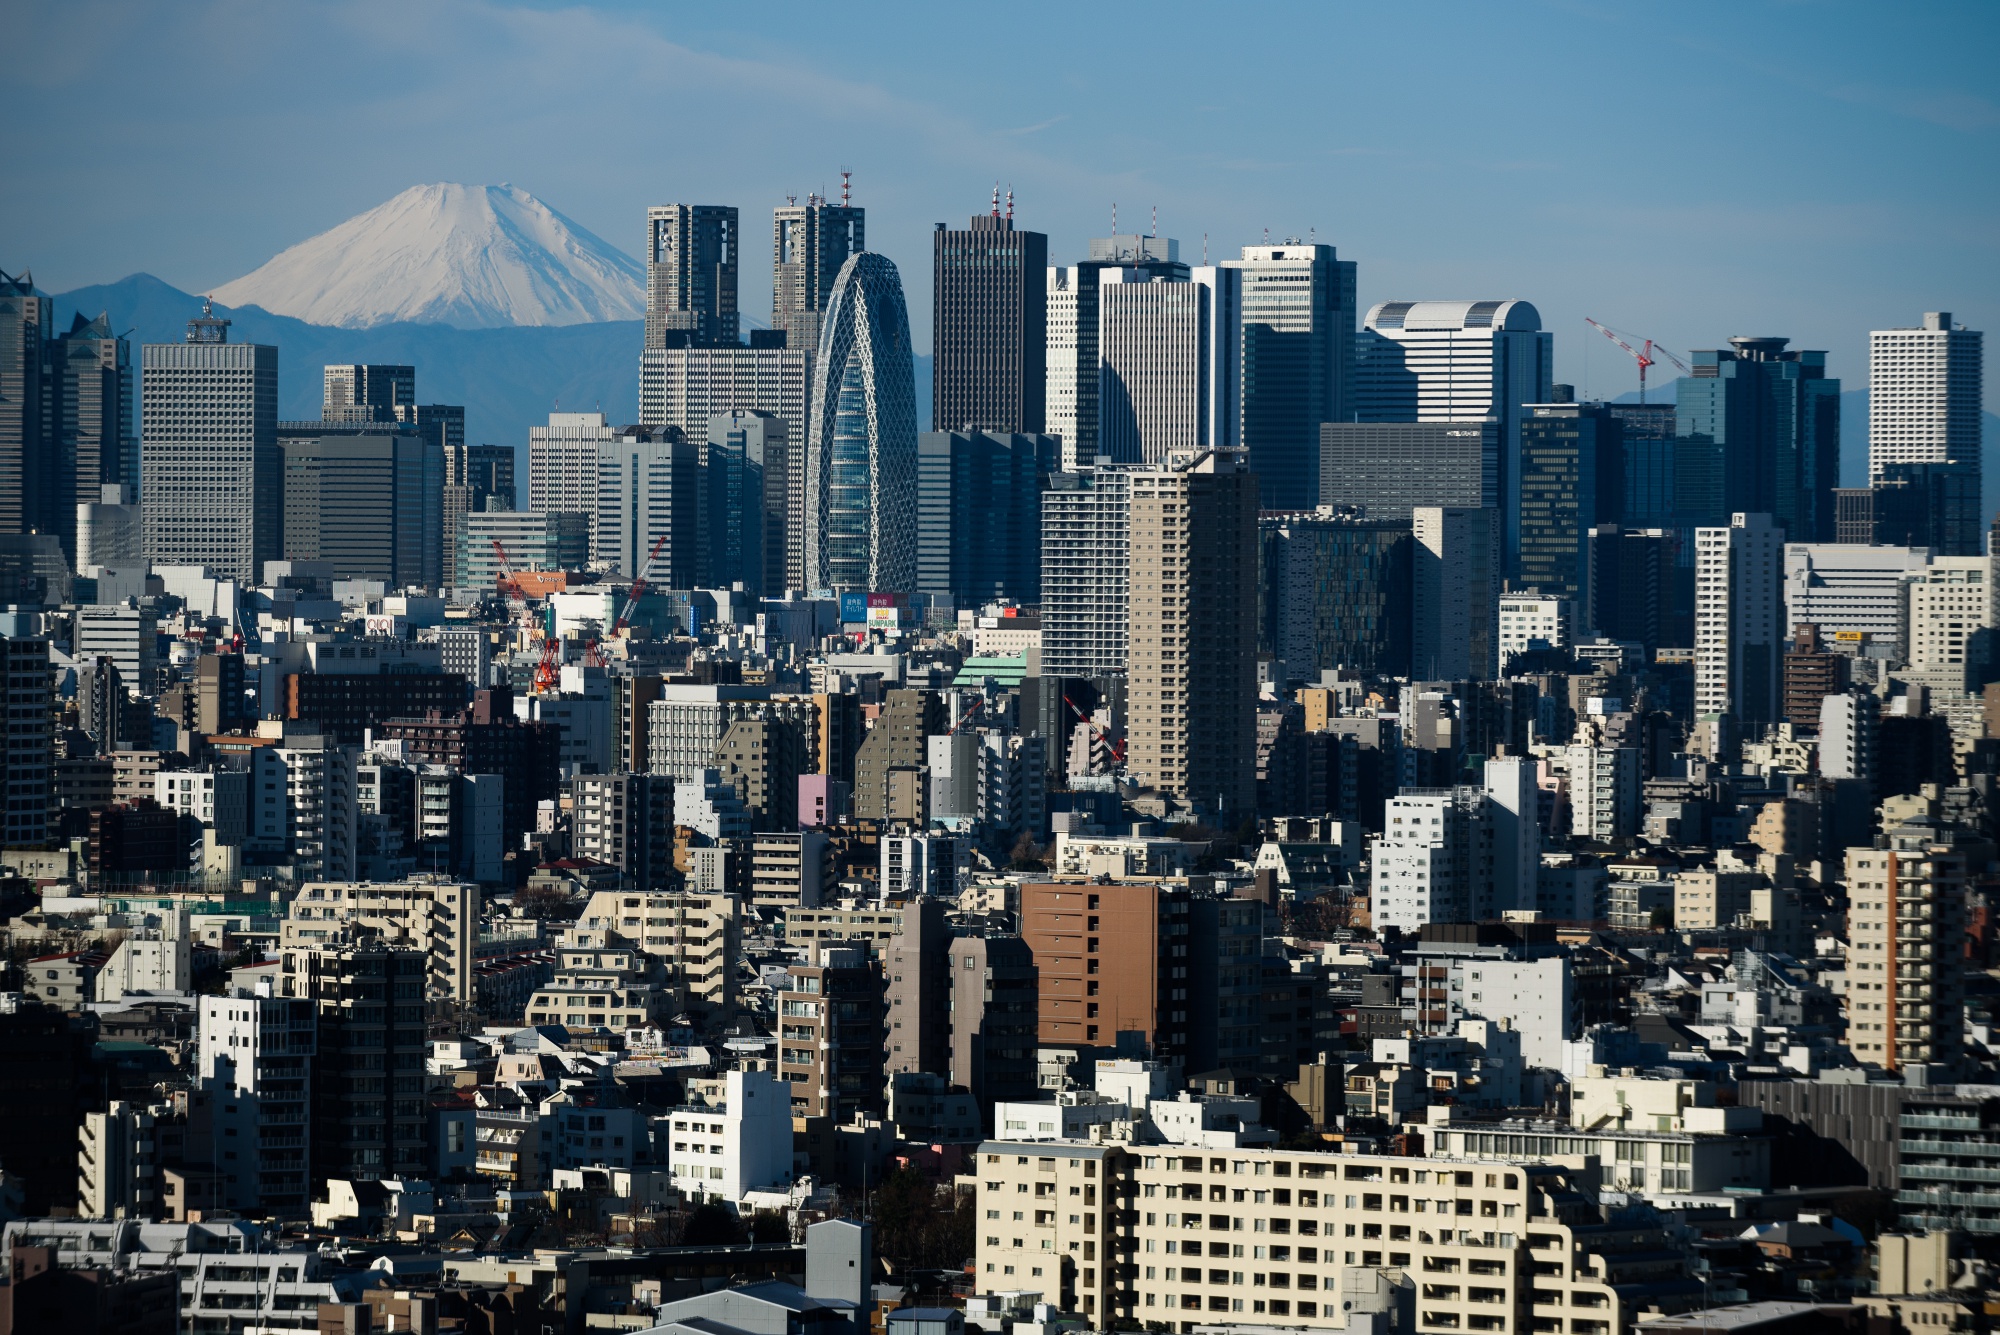 Mount Fuji stands beyond buildings in Tokyo, Japan.